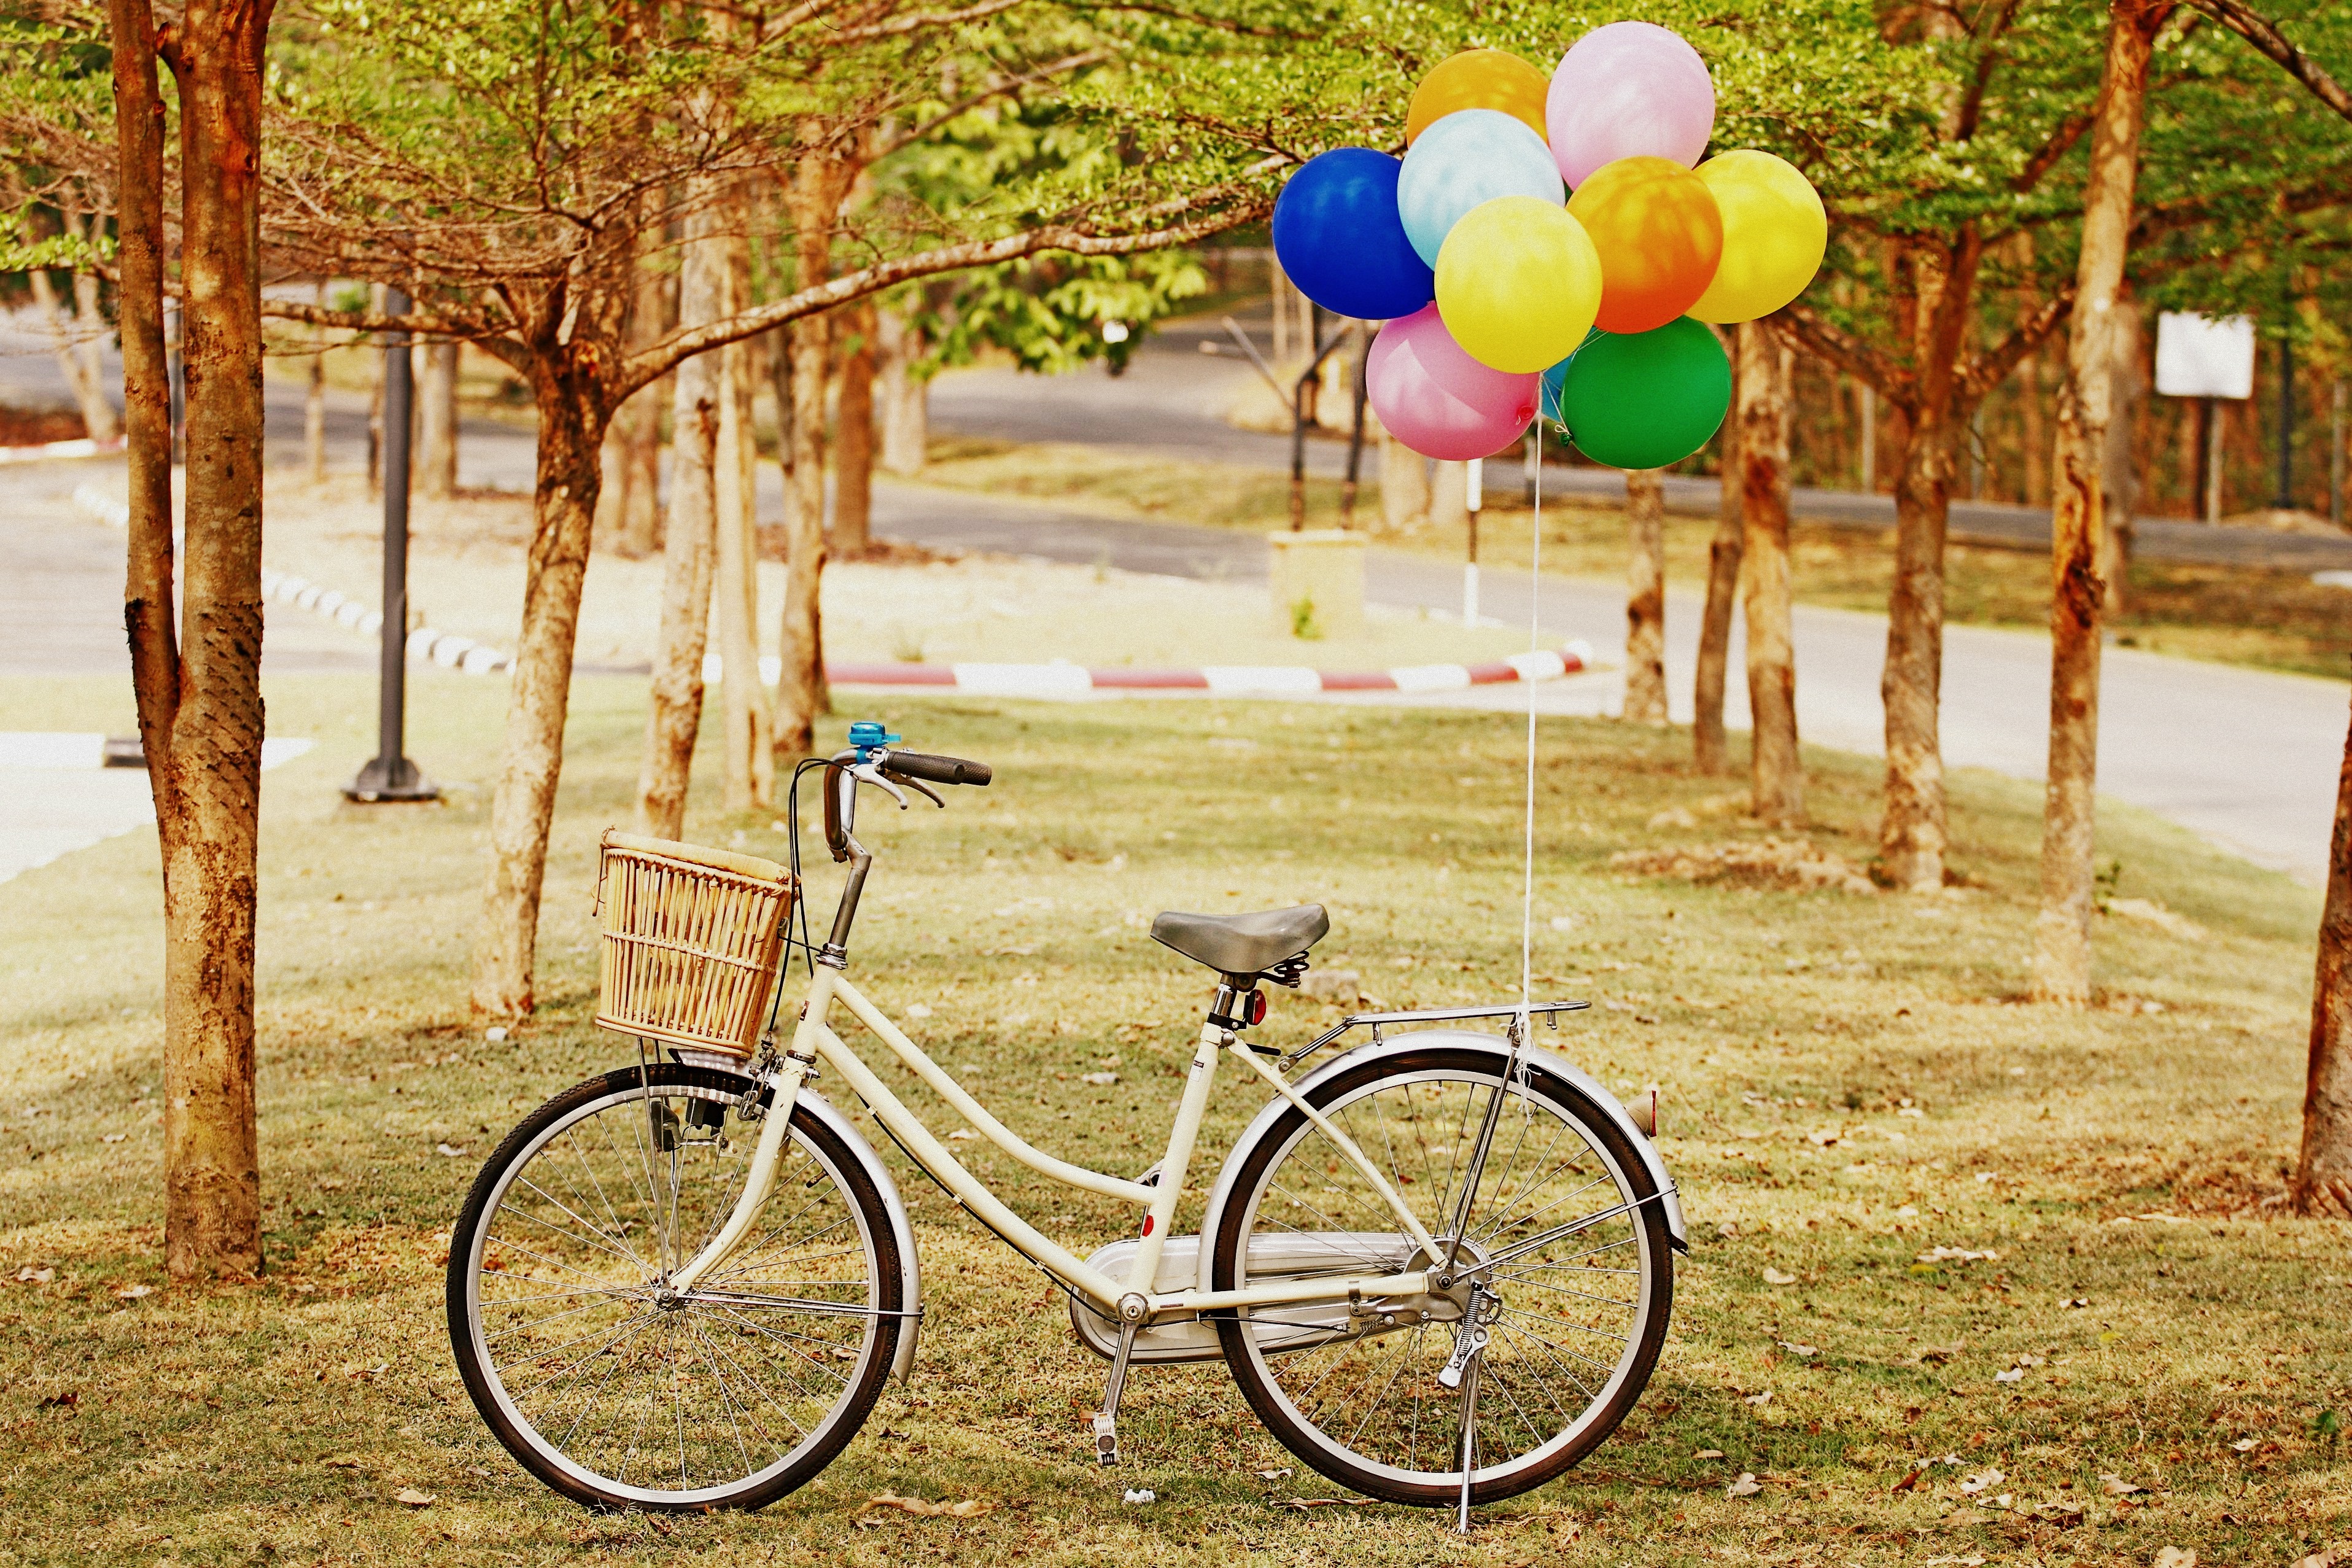 grass, balloons, miscellanea, miscellaneous, park, bicycle, air balloons